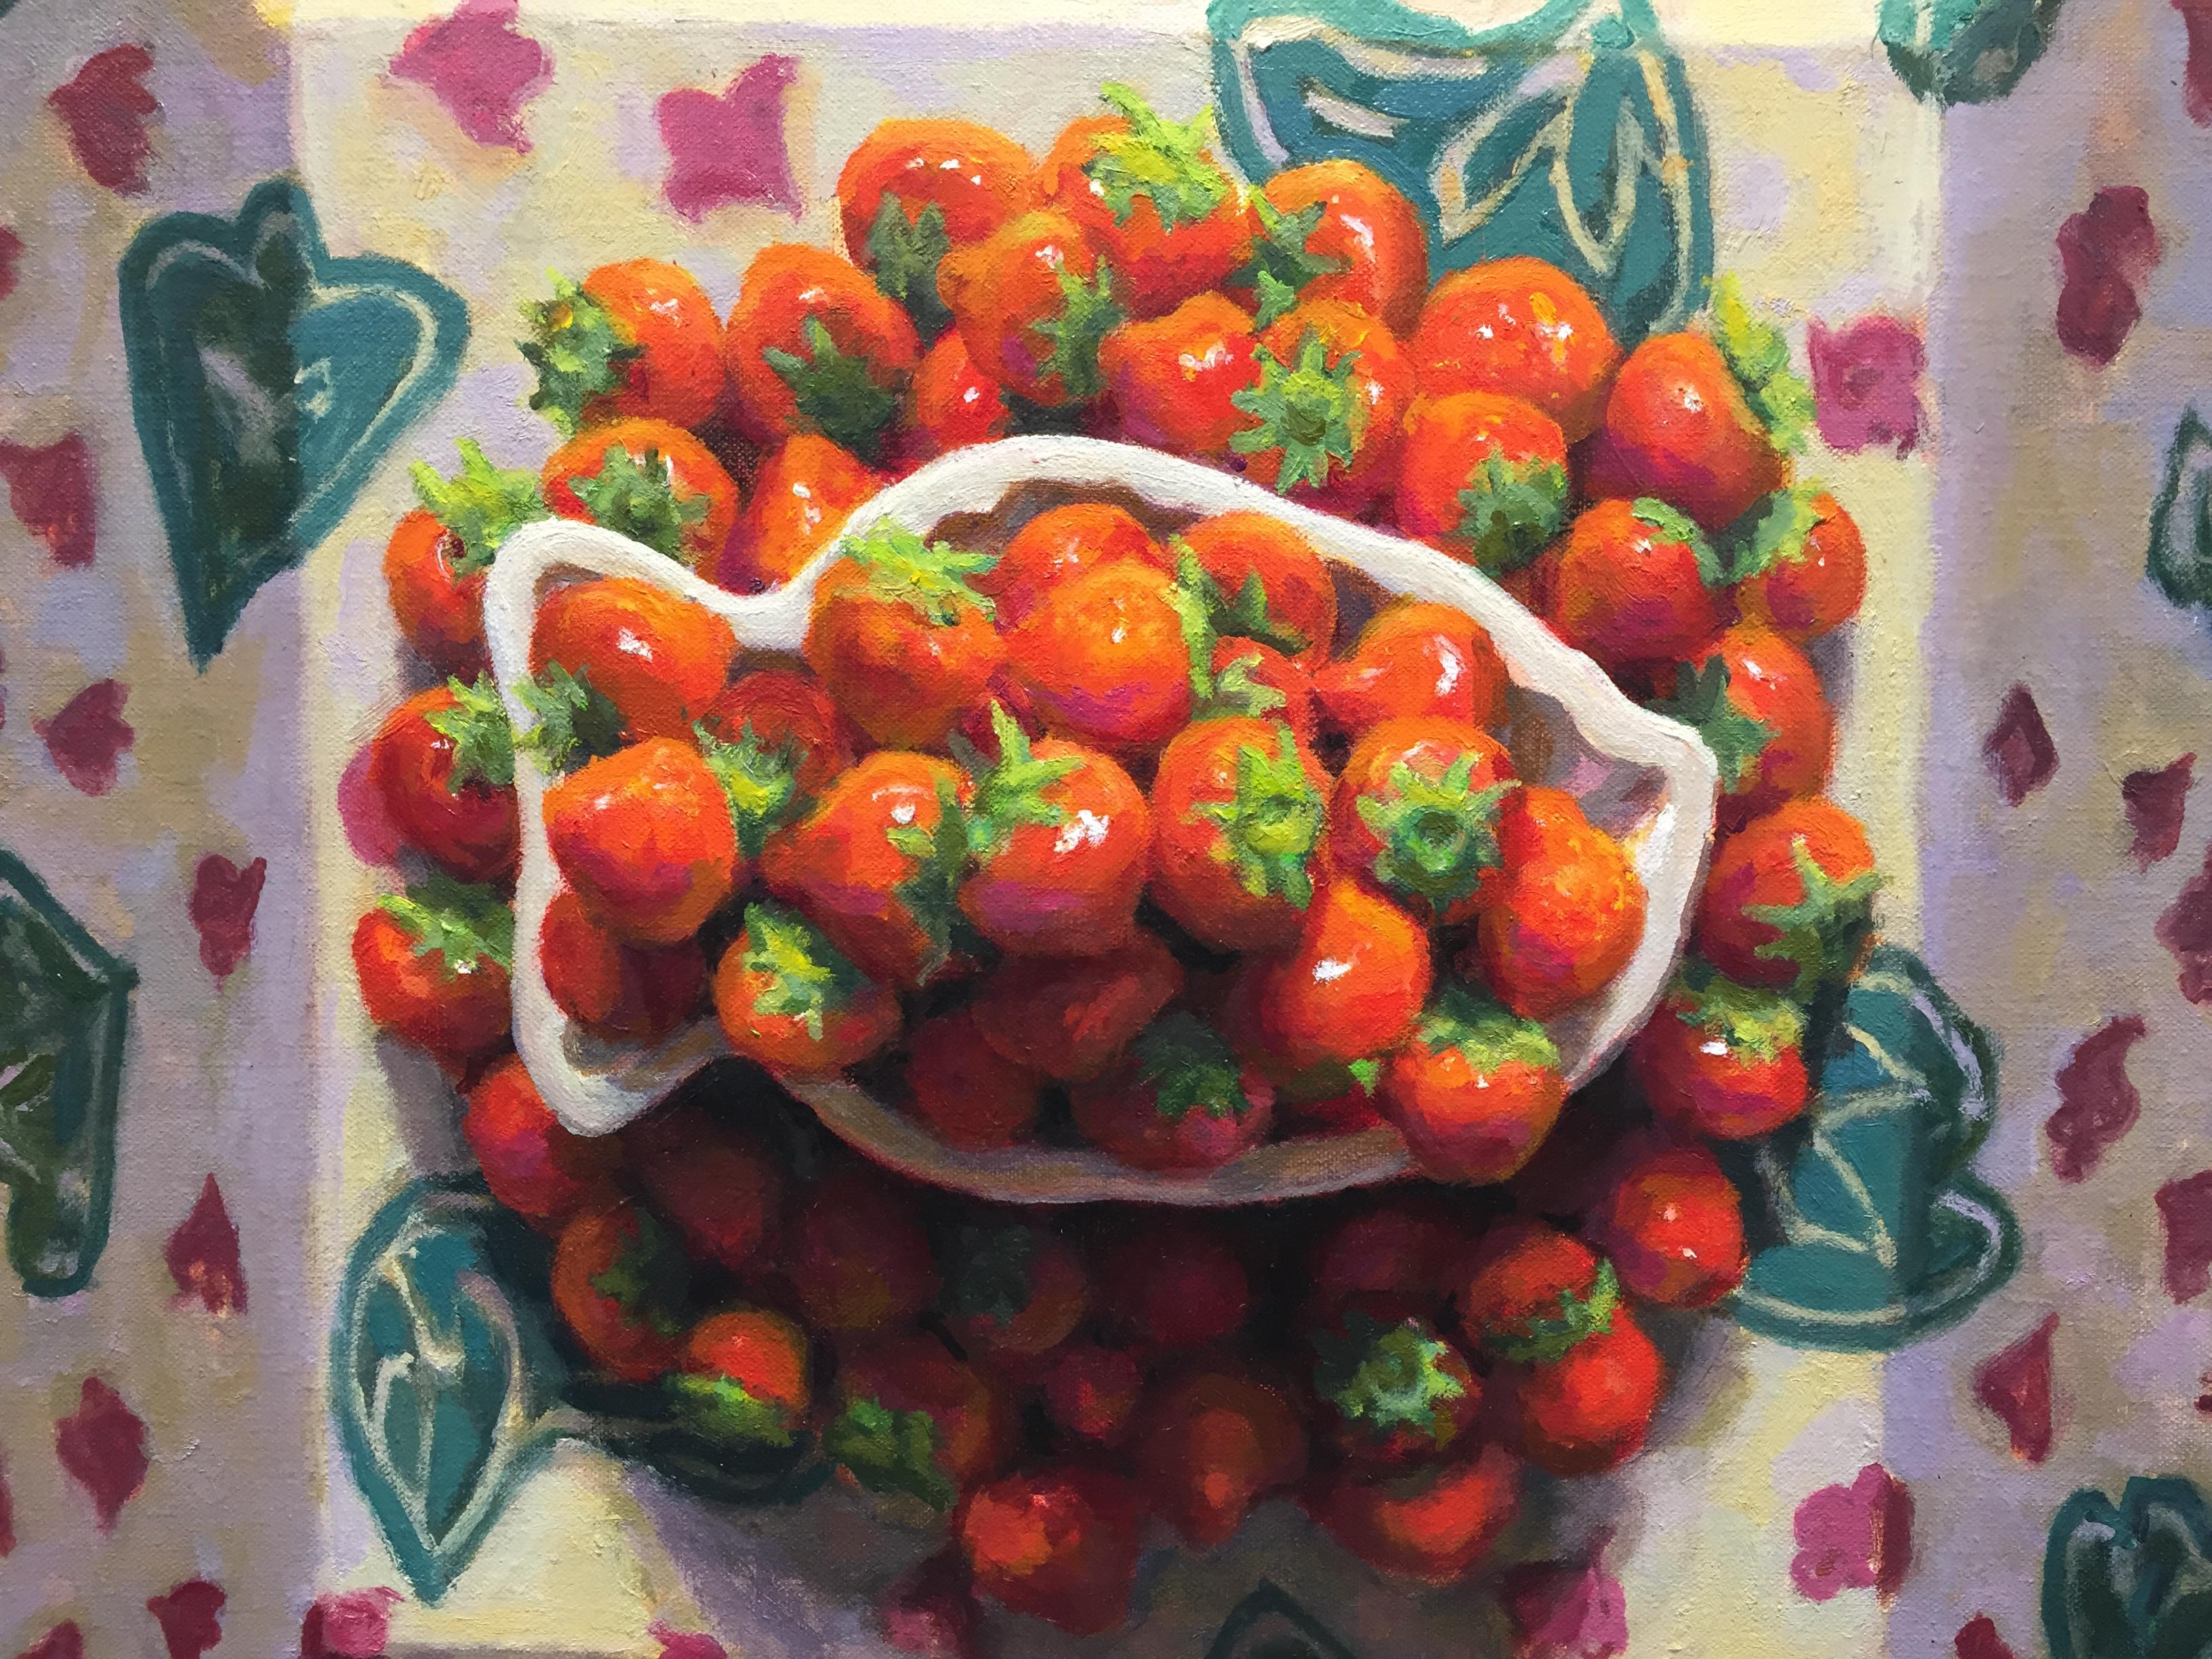 Schale mit Erdbeerbeeren – Stillleben des niederländischen Mario ter Braak aus dem 21. Jahrhundert 3